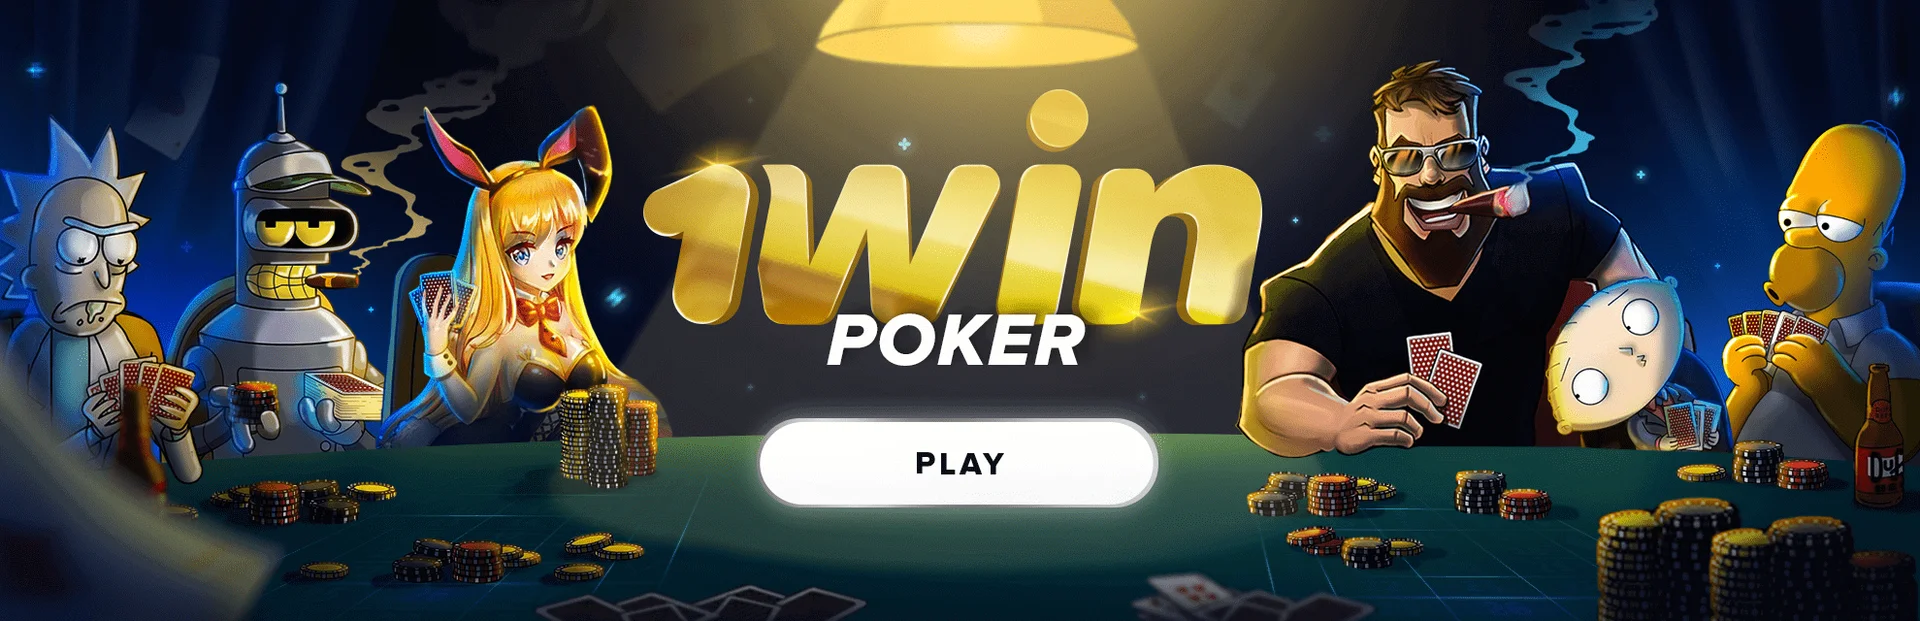 1win poker online